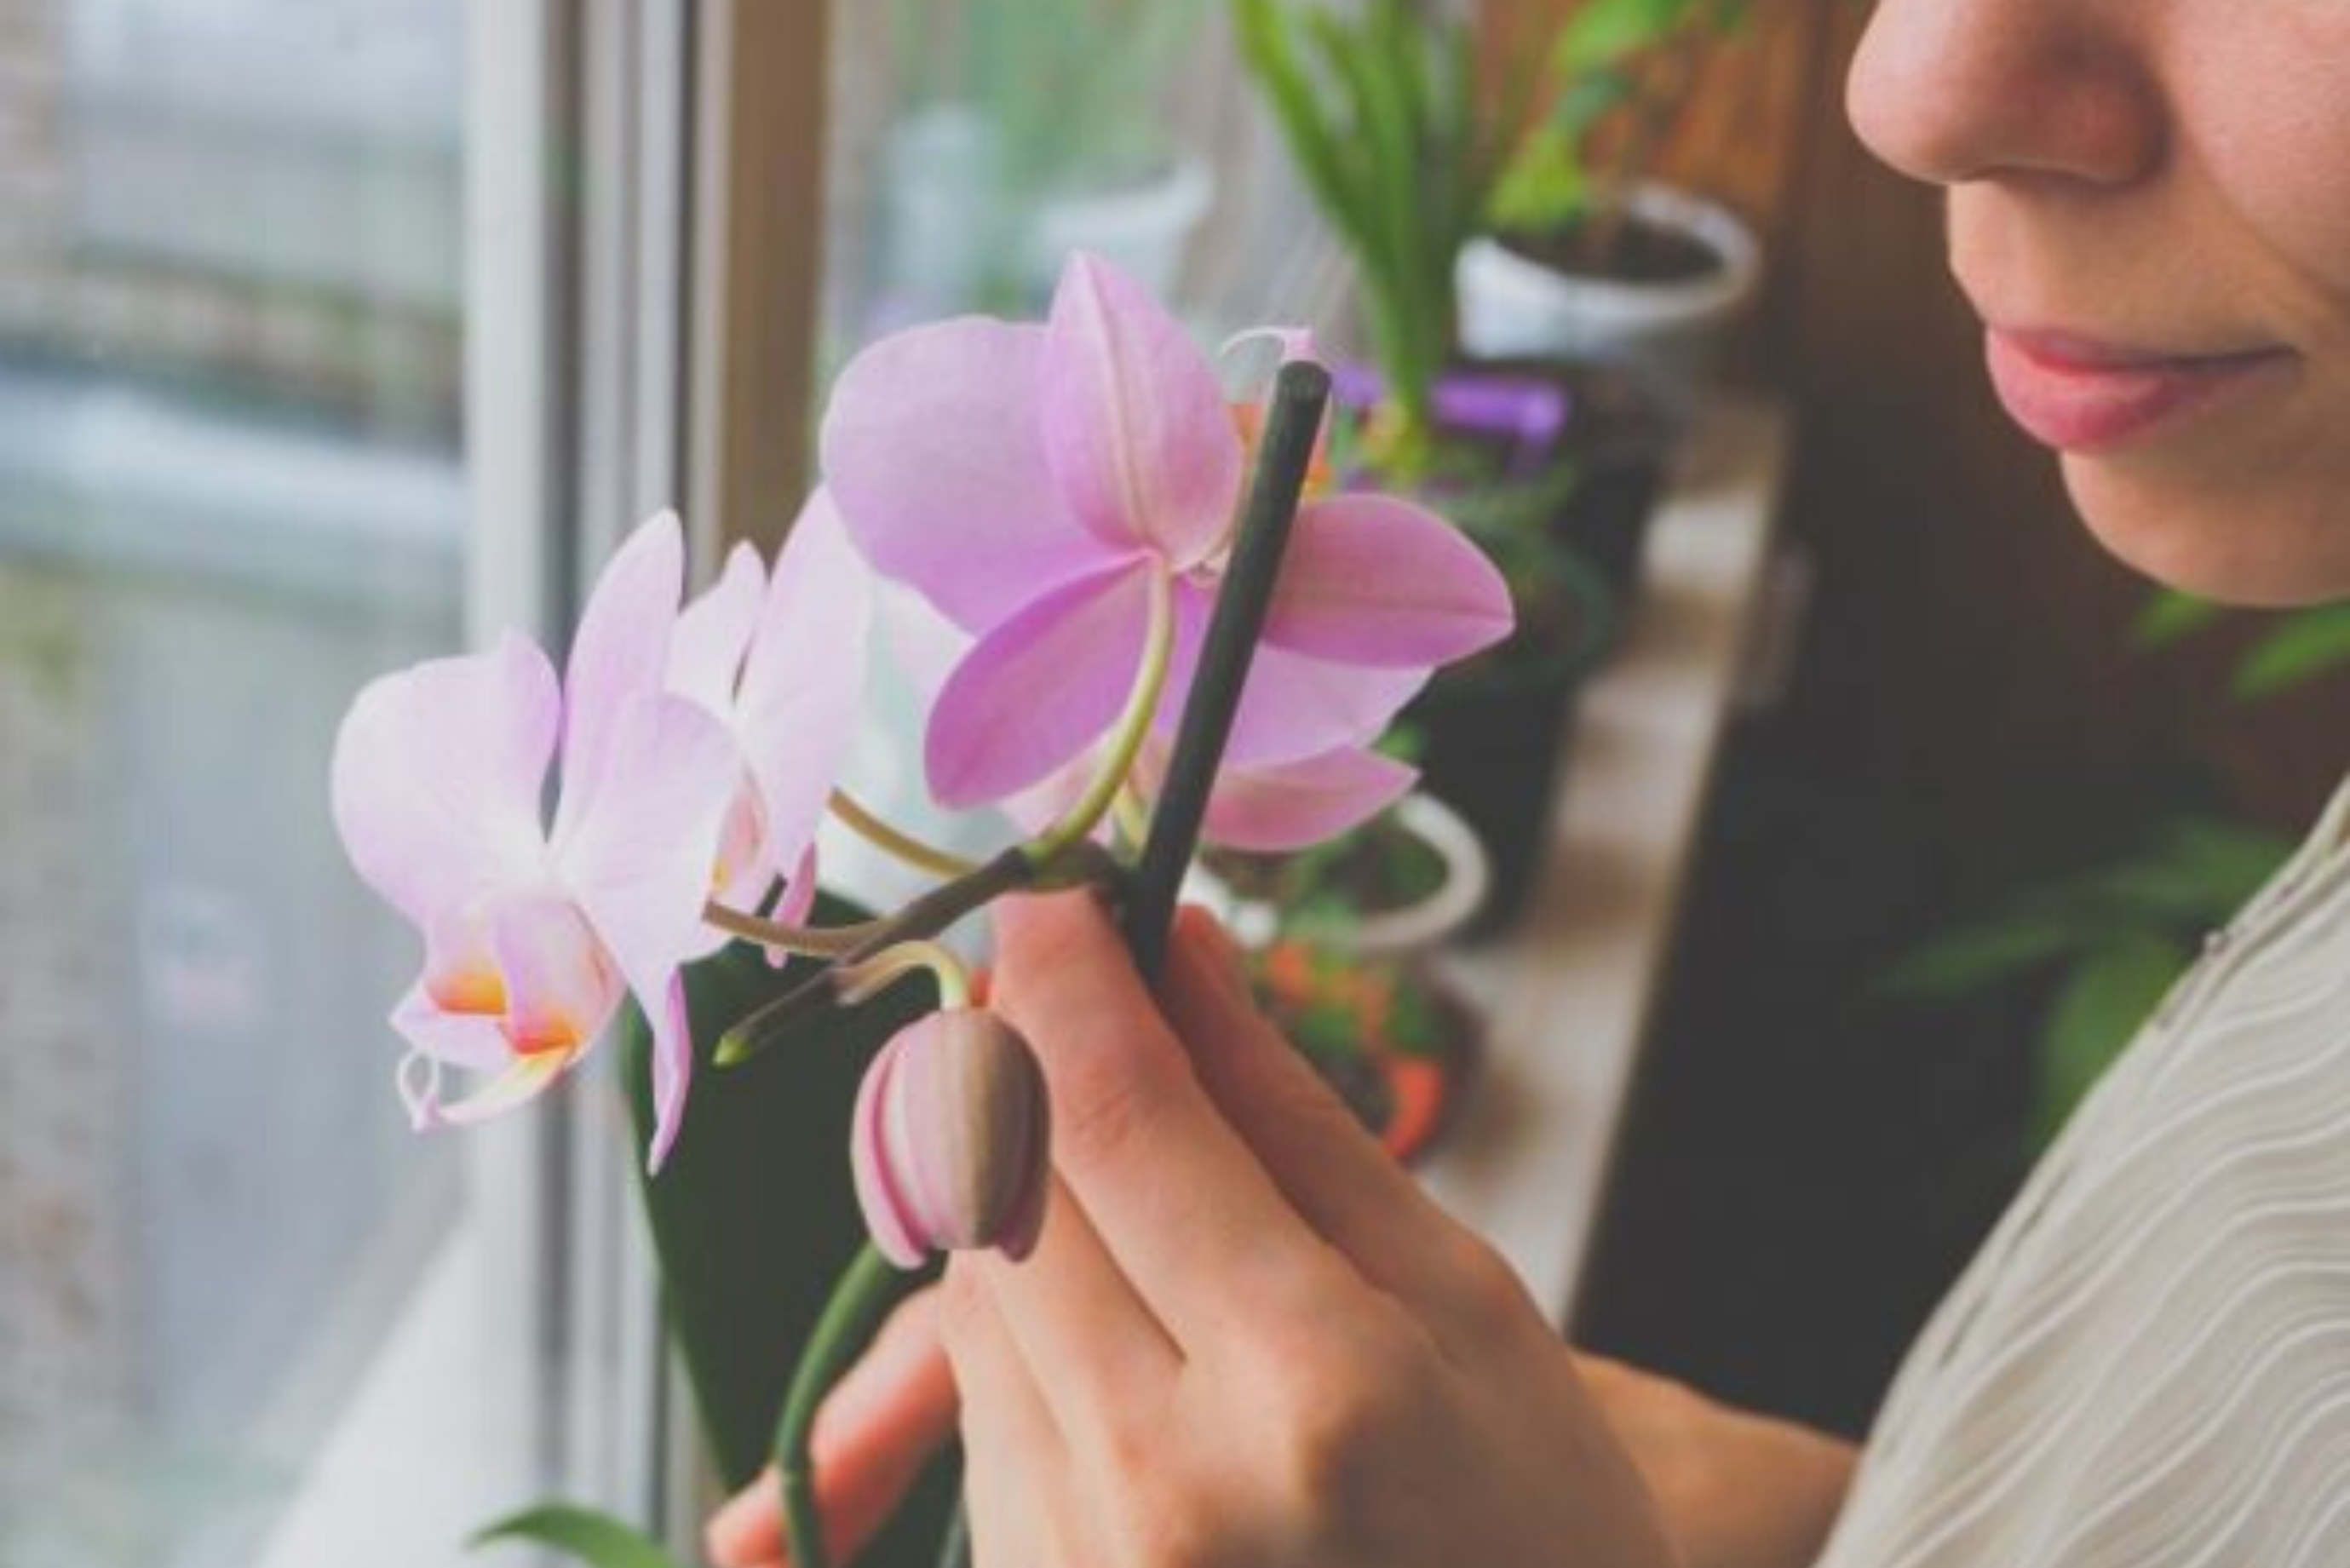 Болезни орхидей, их лечение и фото листьев, пораженных недугами, а также информация об их профилактике selo.guru — интернет портал о сельском хозяйстве